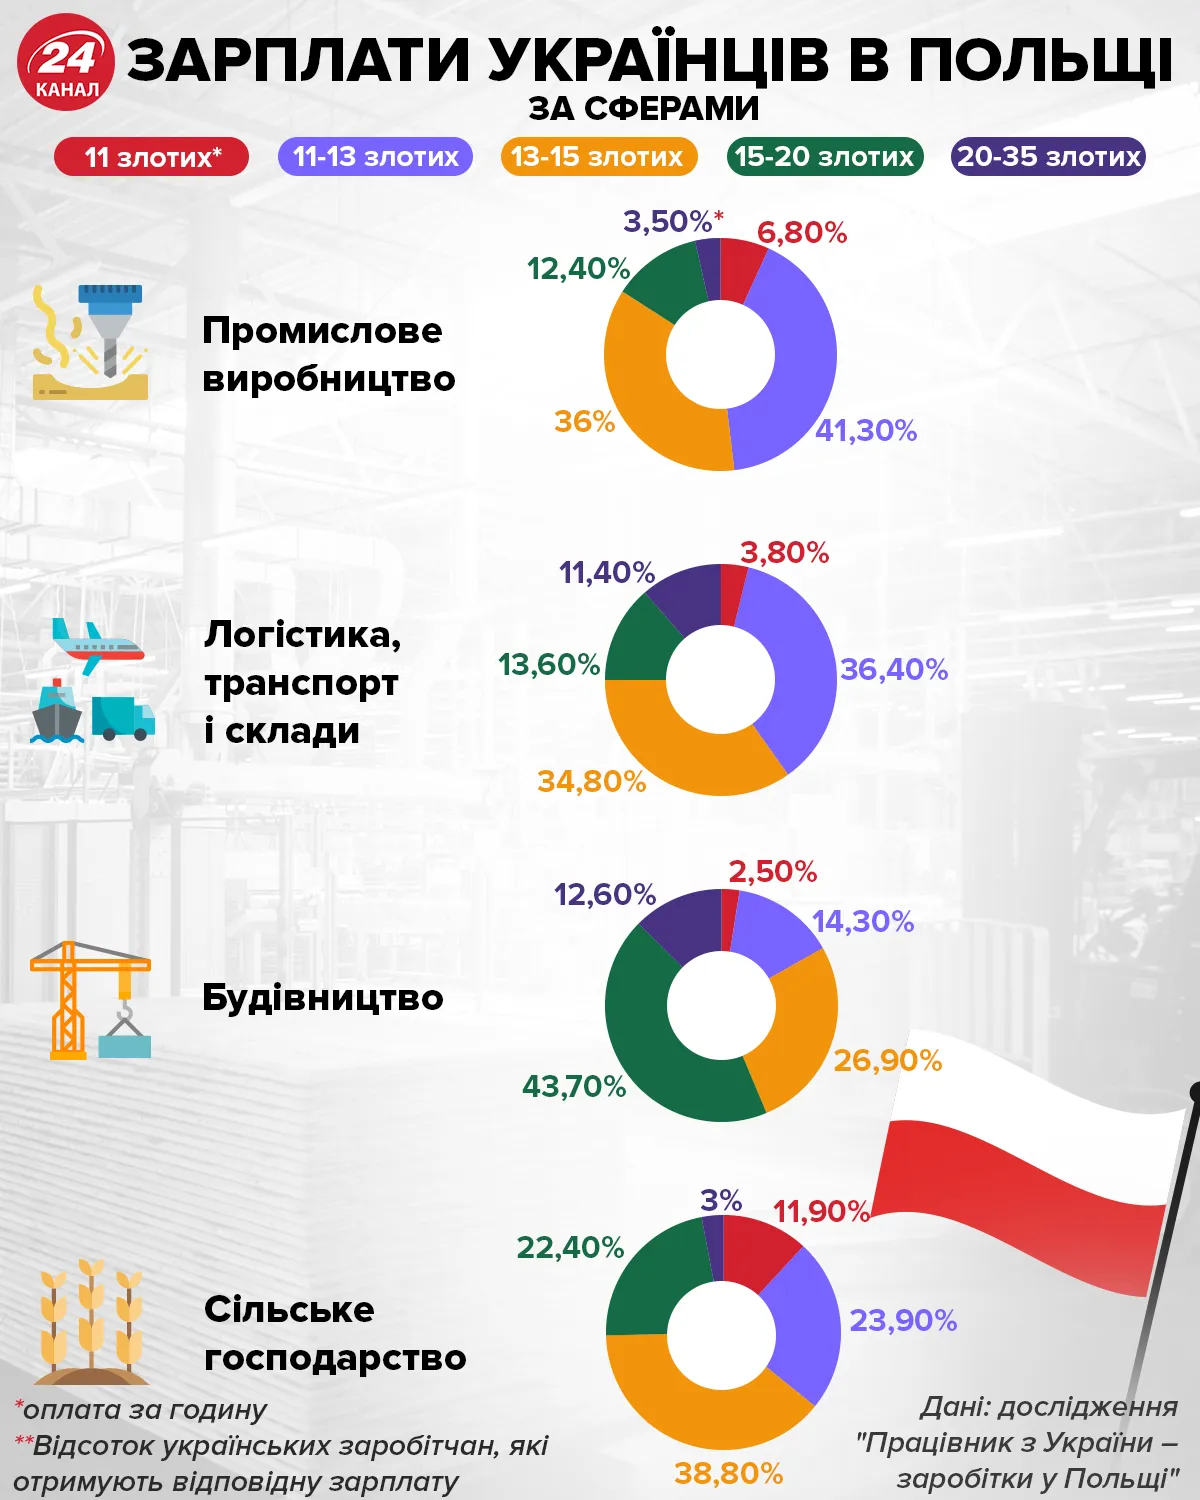 Заработки в Польше по сферам Инфографика 24 канала